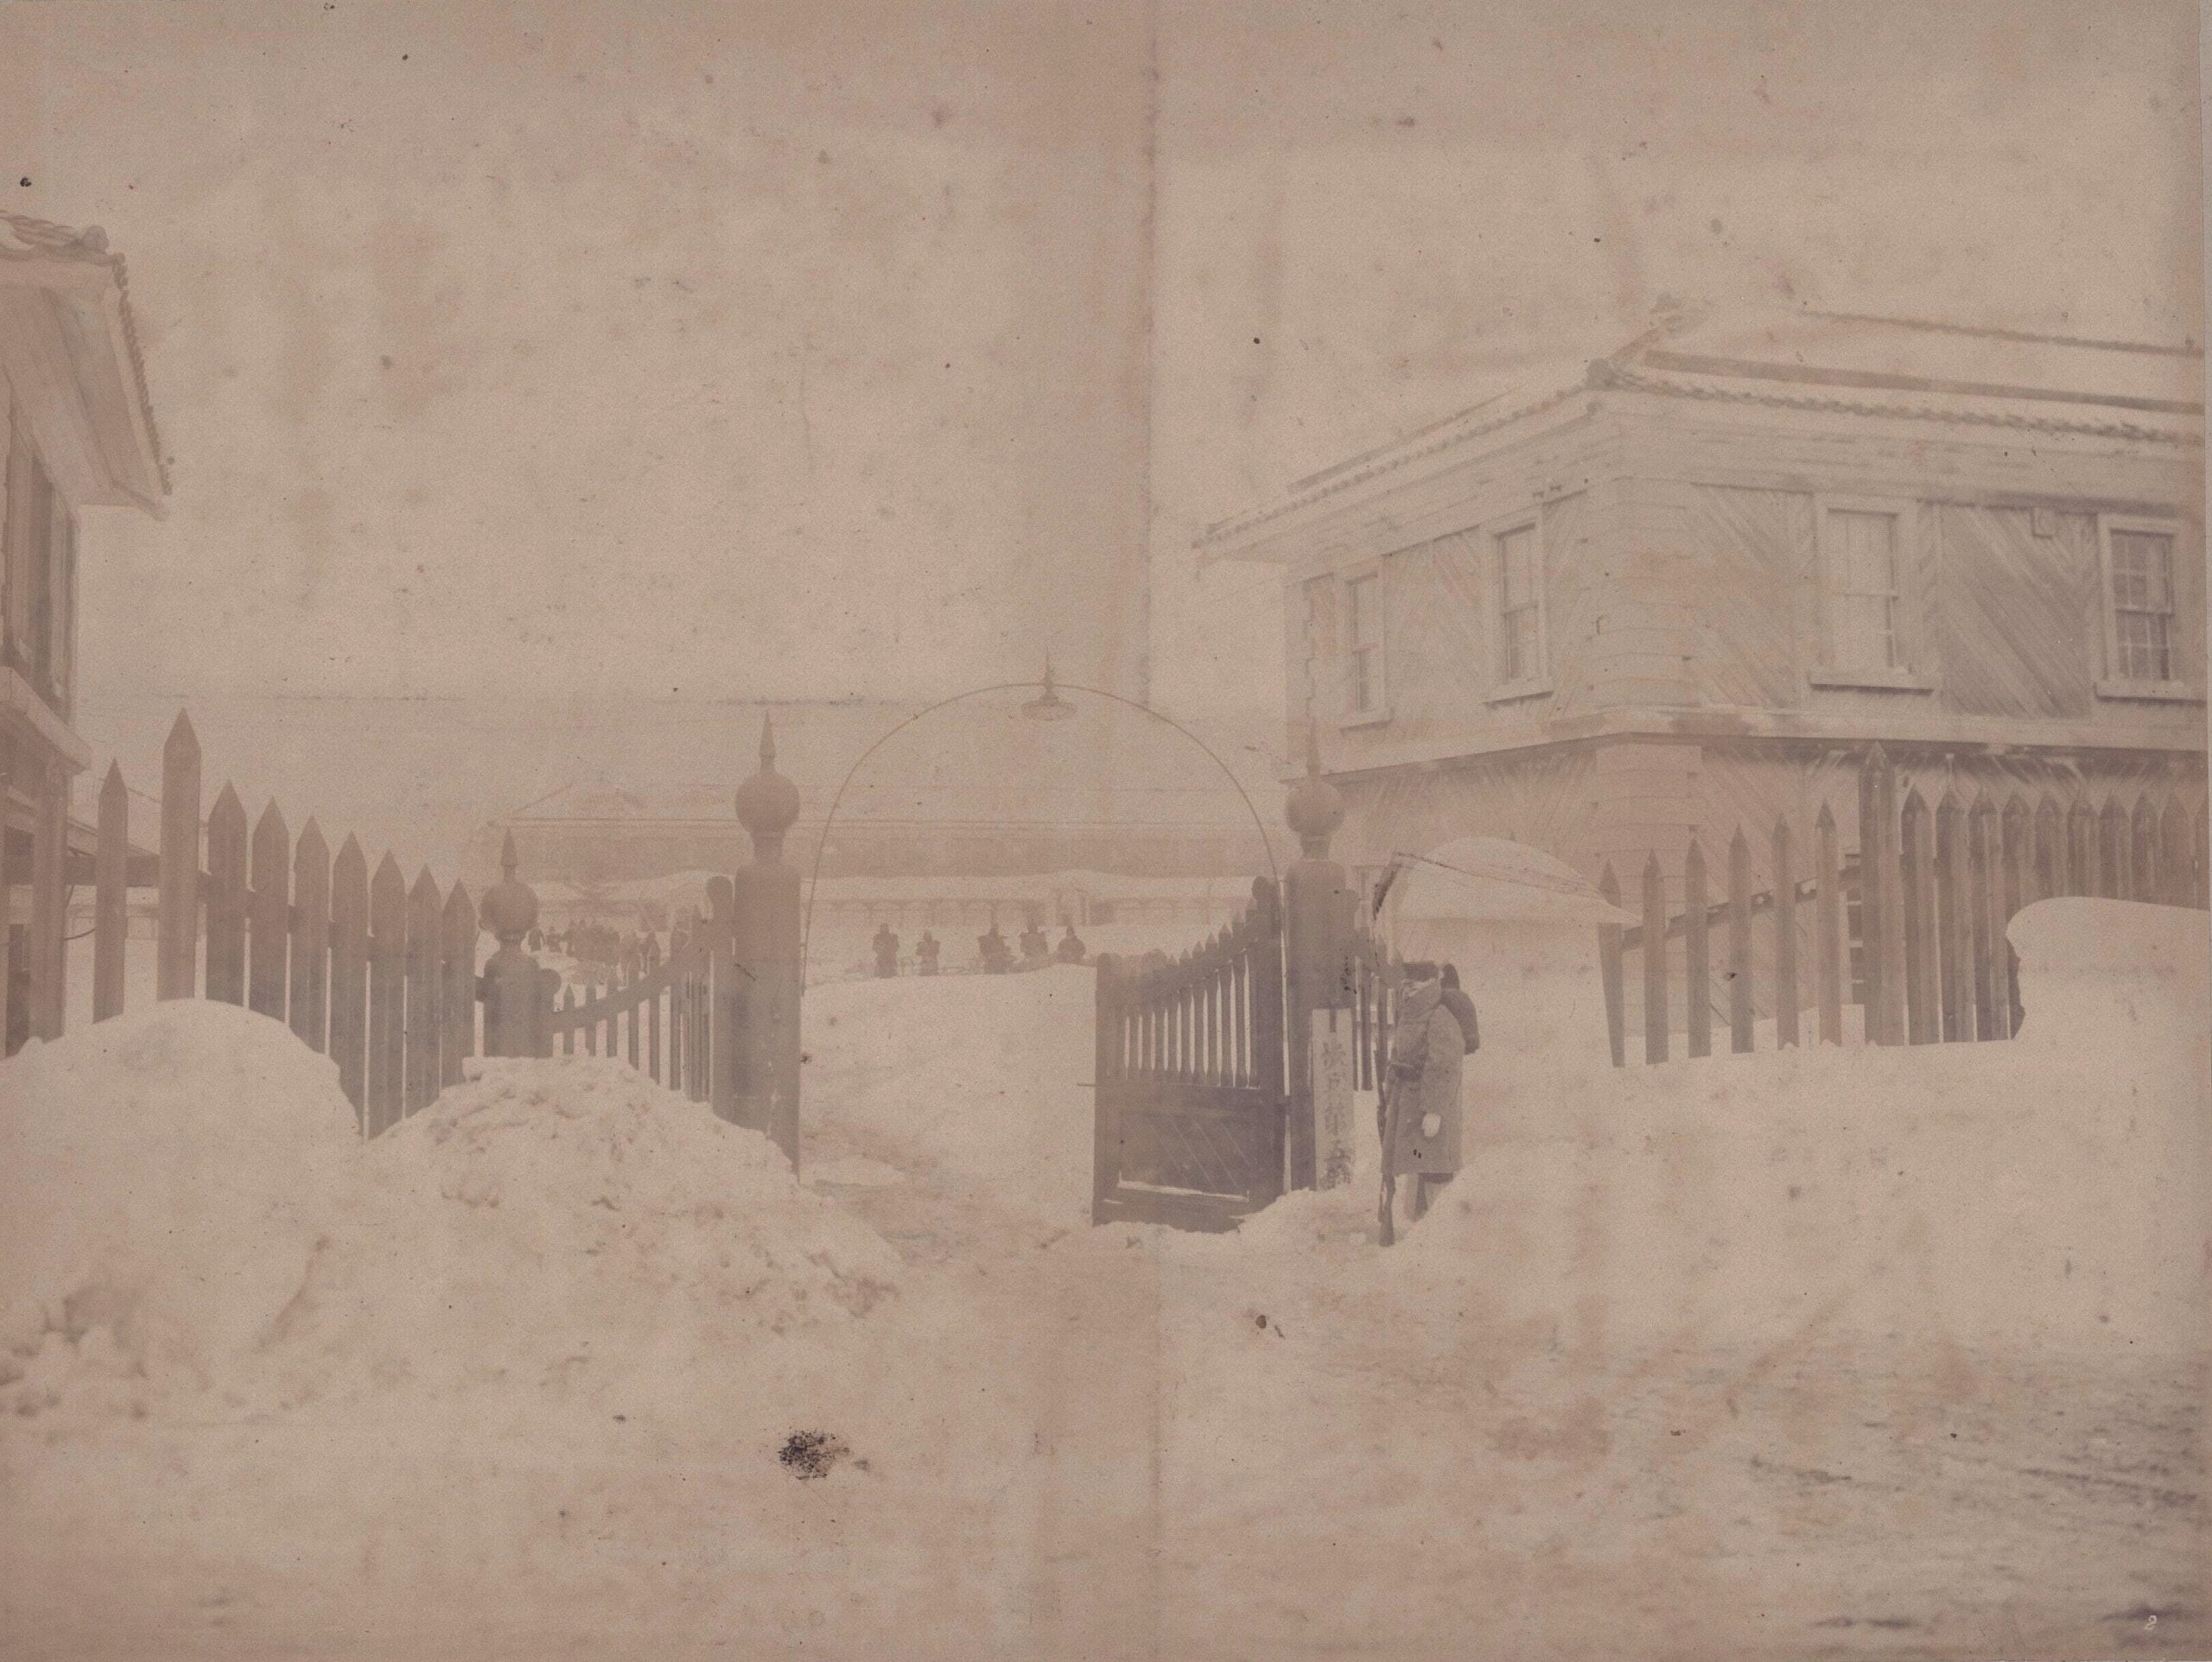 青森衛戍歩兵第五聯隊営門の光景（陸地測量部、1902　青森県立図書館デジタルアーカイブ）の画像。 